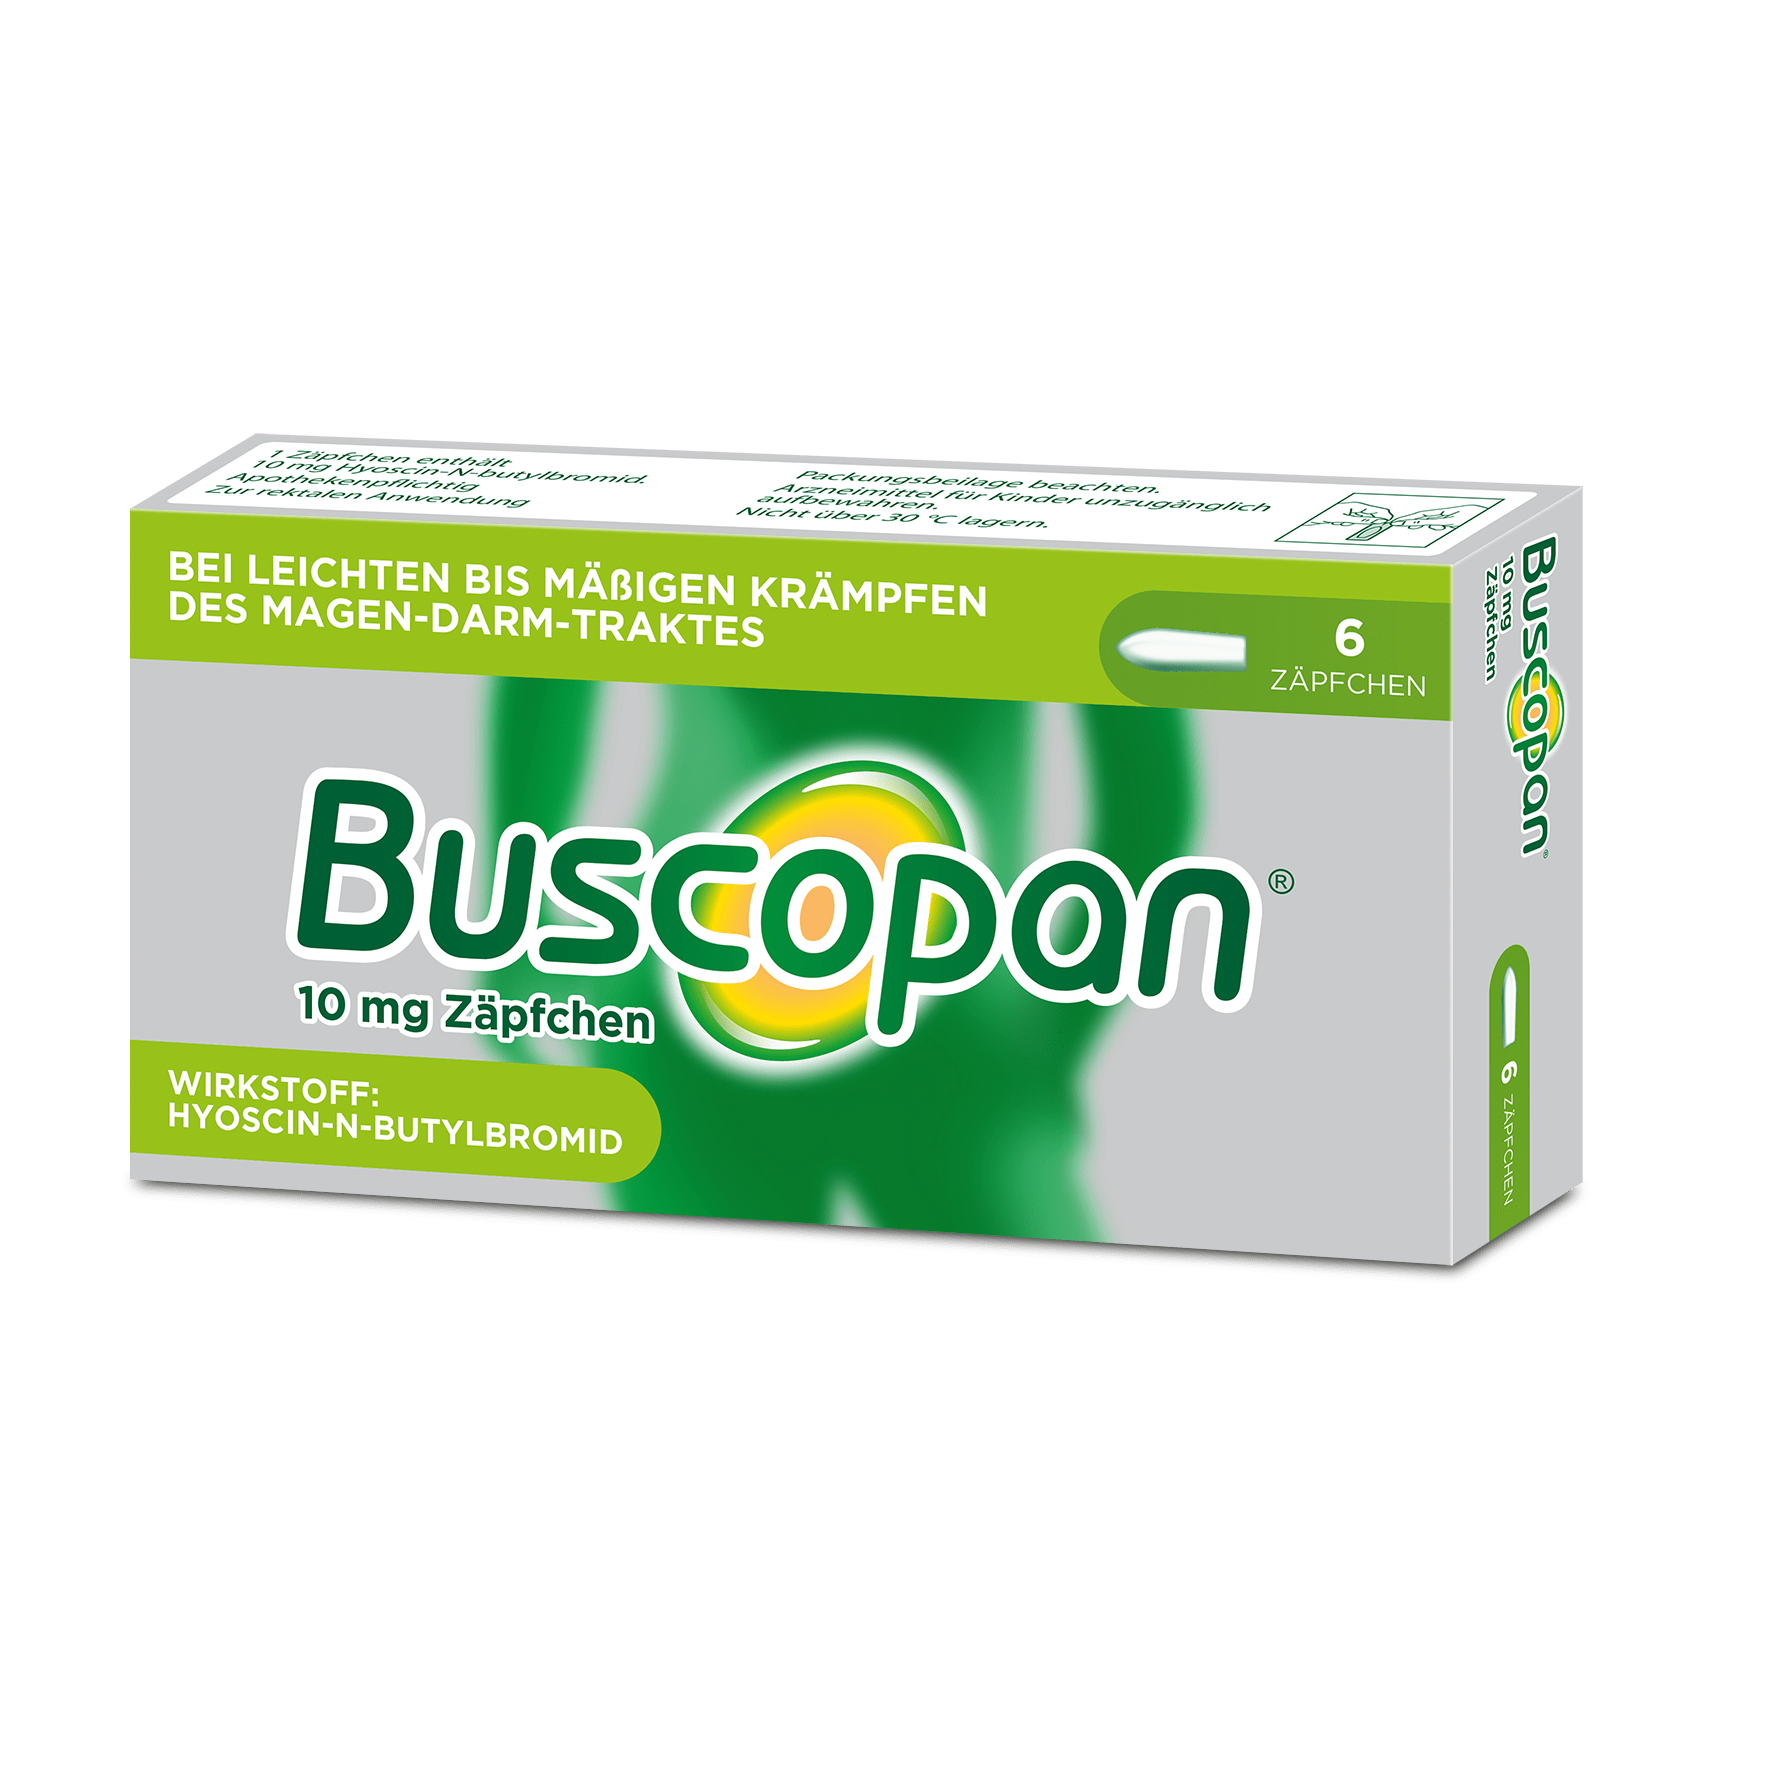 دواء buscopan